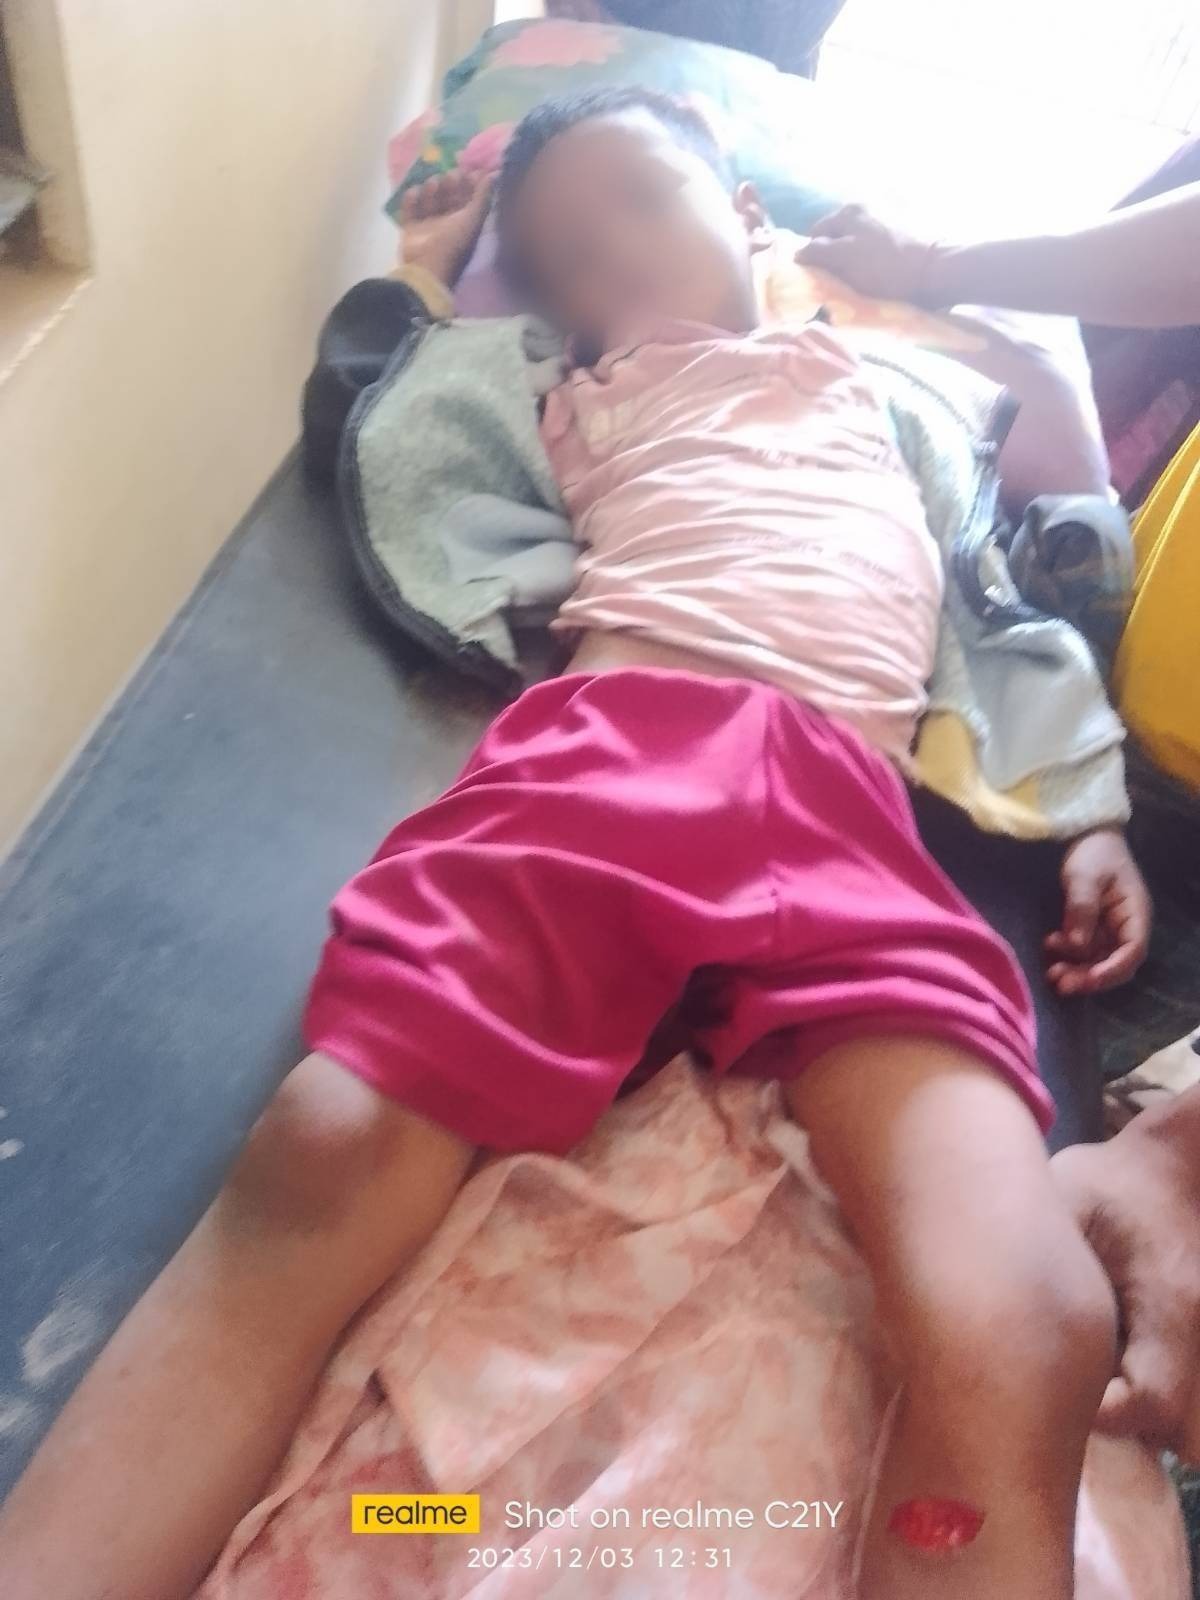 မတ္တရာမြို့နယ်မှာ စစ်တပ်ရဲ့ပစ်ခတ်မှုကြောင့် ကလေးငယ် ၂ ဦးအပါ ၅ ဦး ဒဏ်ရာရ